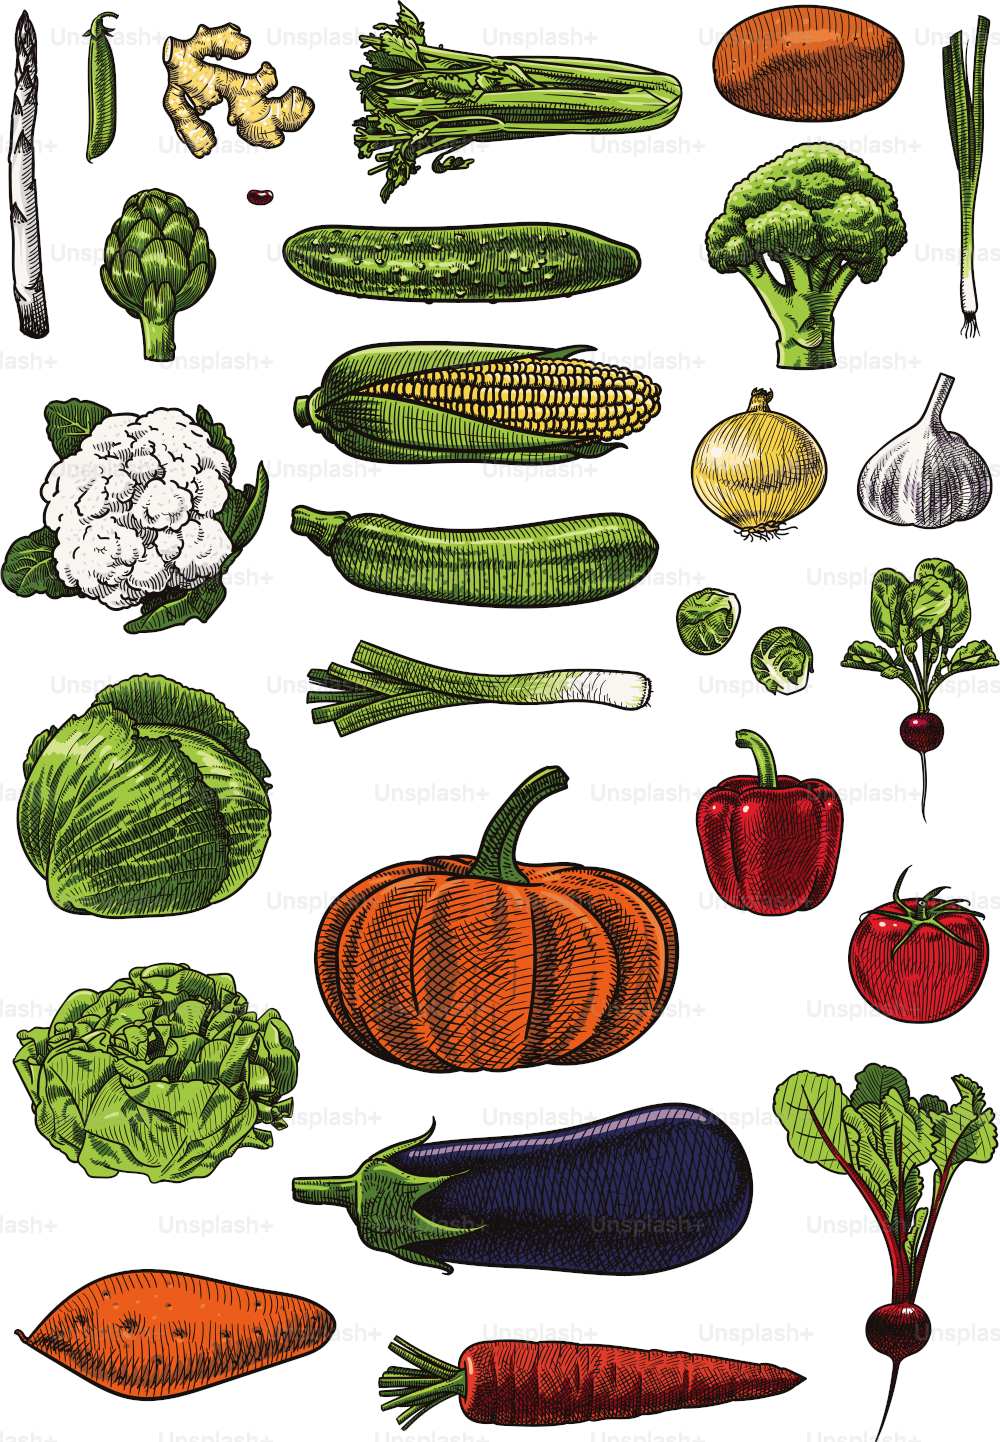 野菜の盛り合わせのベクトル図。慎重にグループ化され、ラベル付けされ、選択と編集が簡単です。